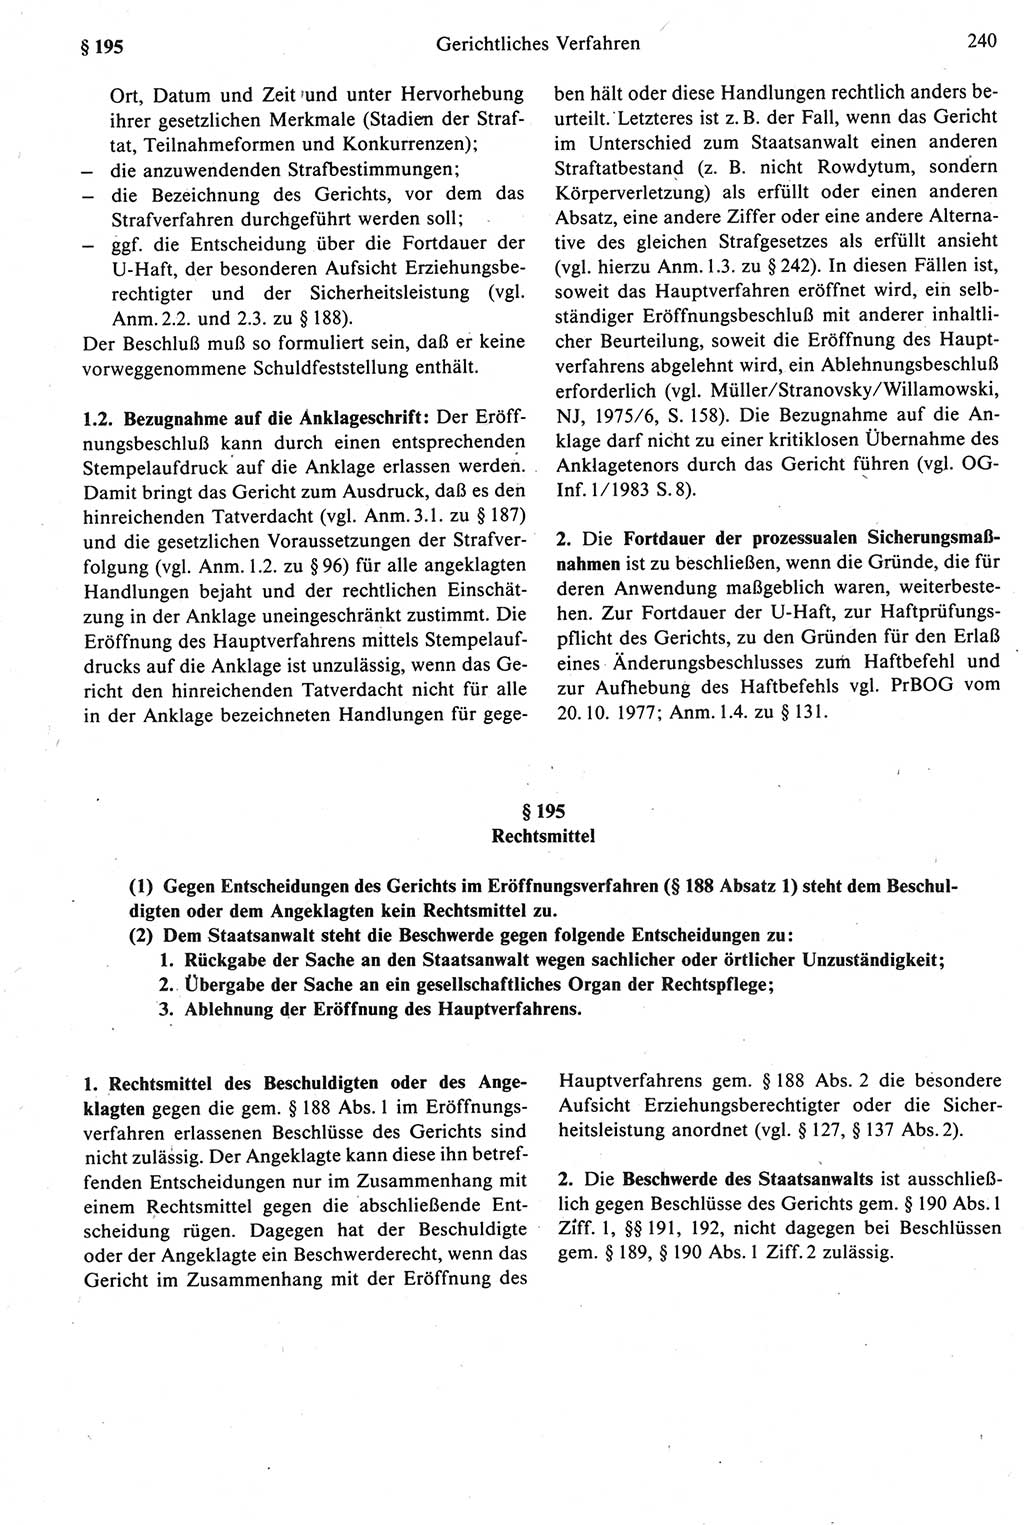 Strafprozeßrecht der DDR [Deutsche Demokratische Republik], Kommentar zur Strafprozeßordnung (StPO) 1987, Seite 240 (Strafprozeßr. DDR Komm. StPO 1987, S. 240)